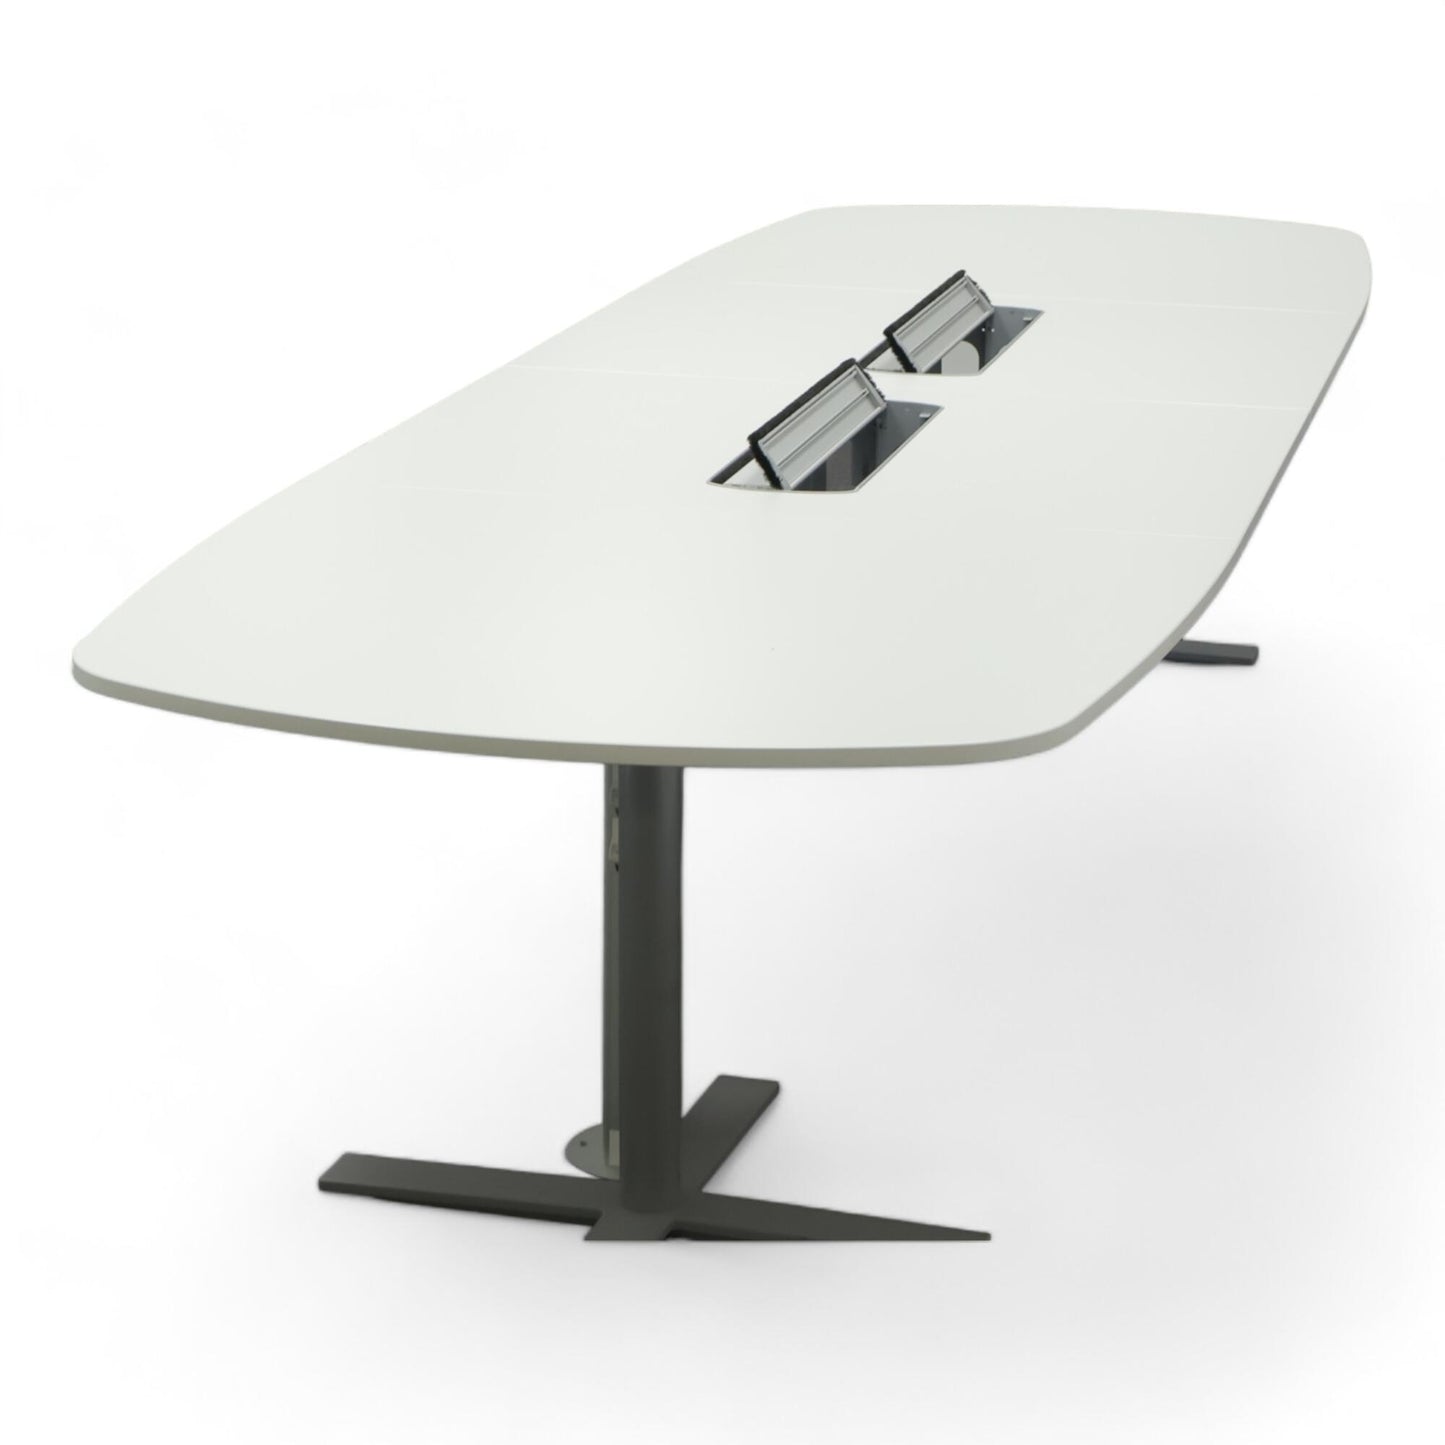 Nyrenset | Kinnarps 'Angle' hvitt konferansebord med Oberon-modell kabelluker